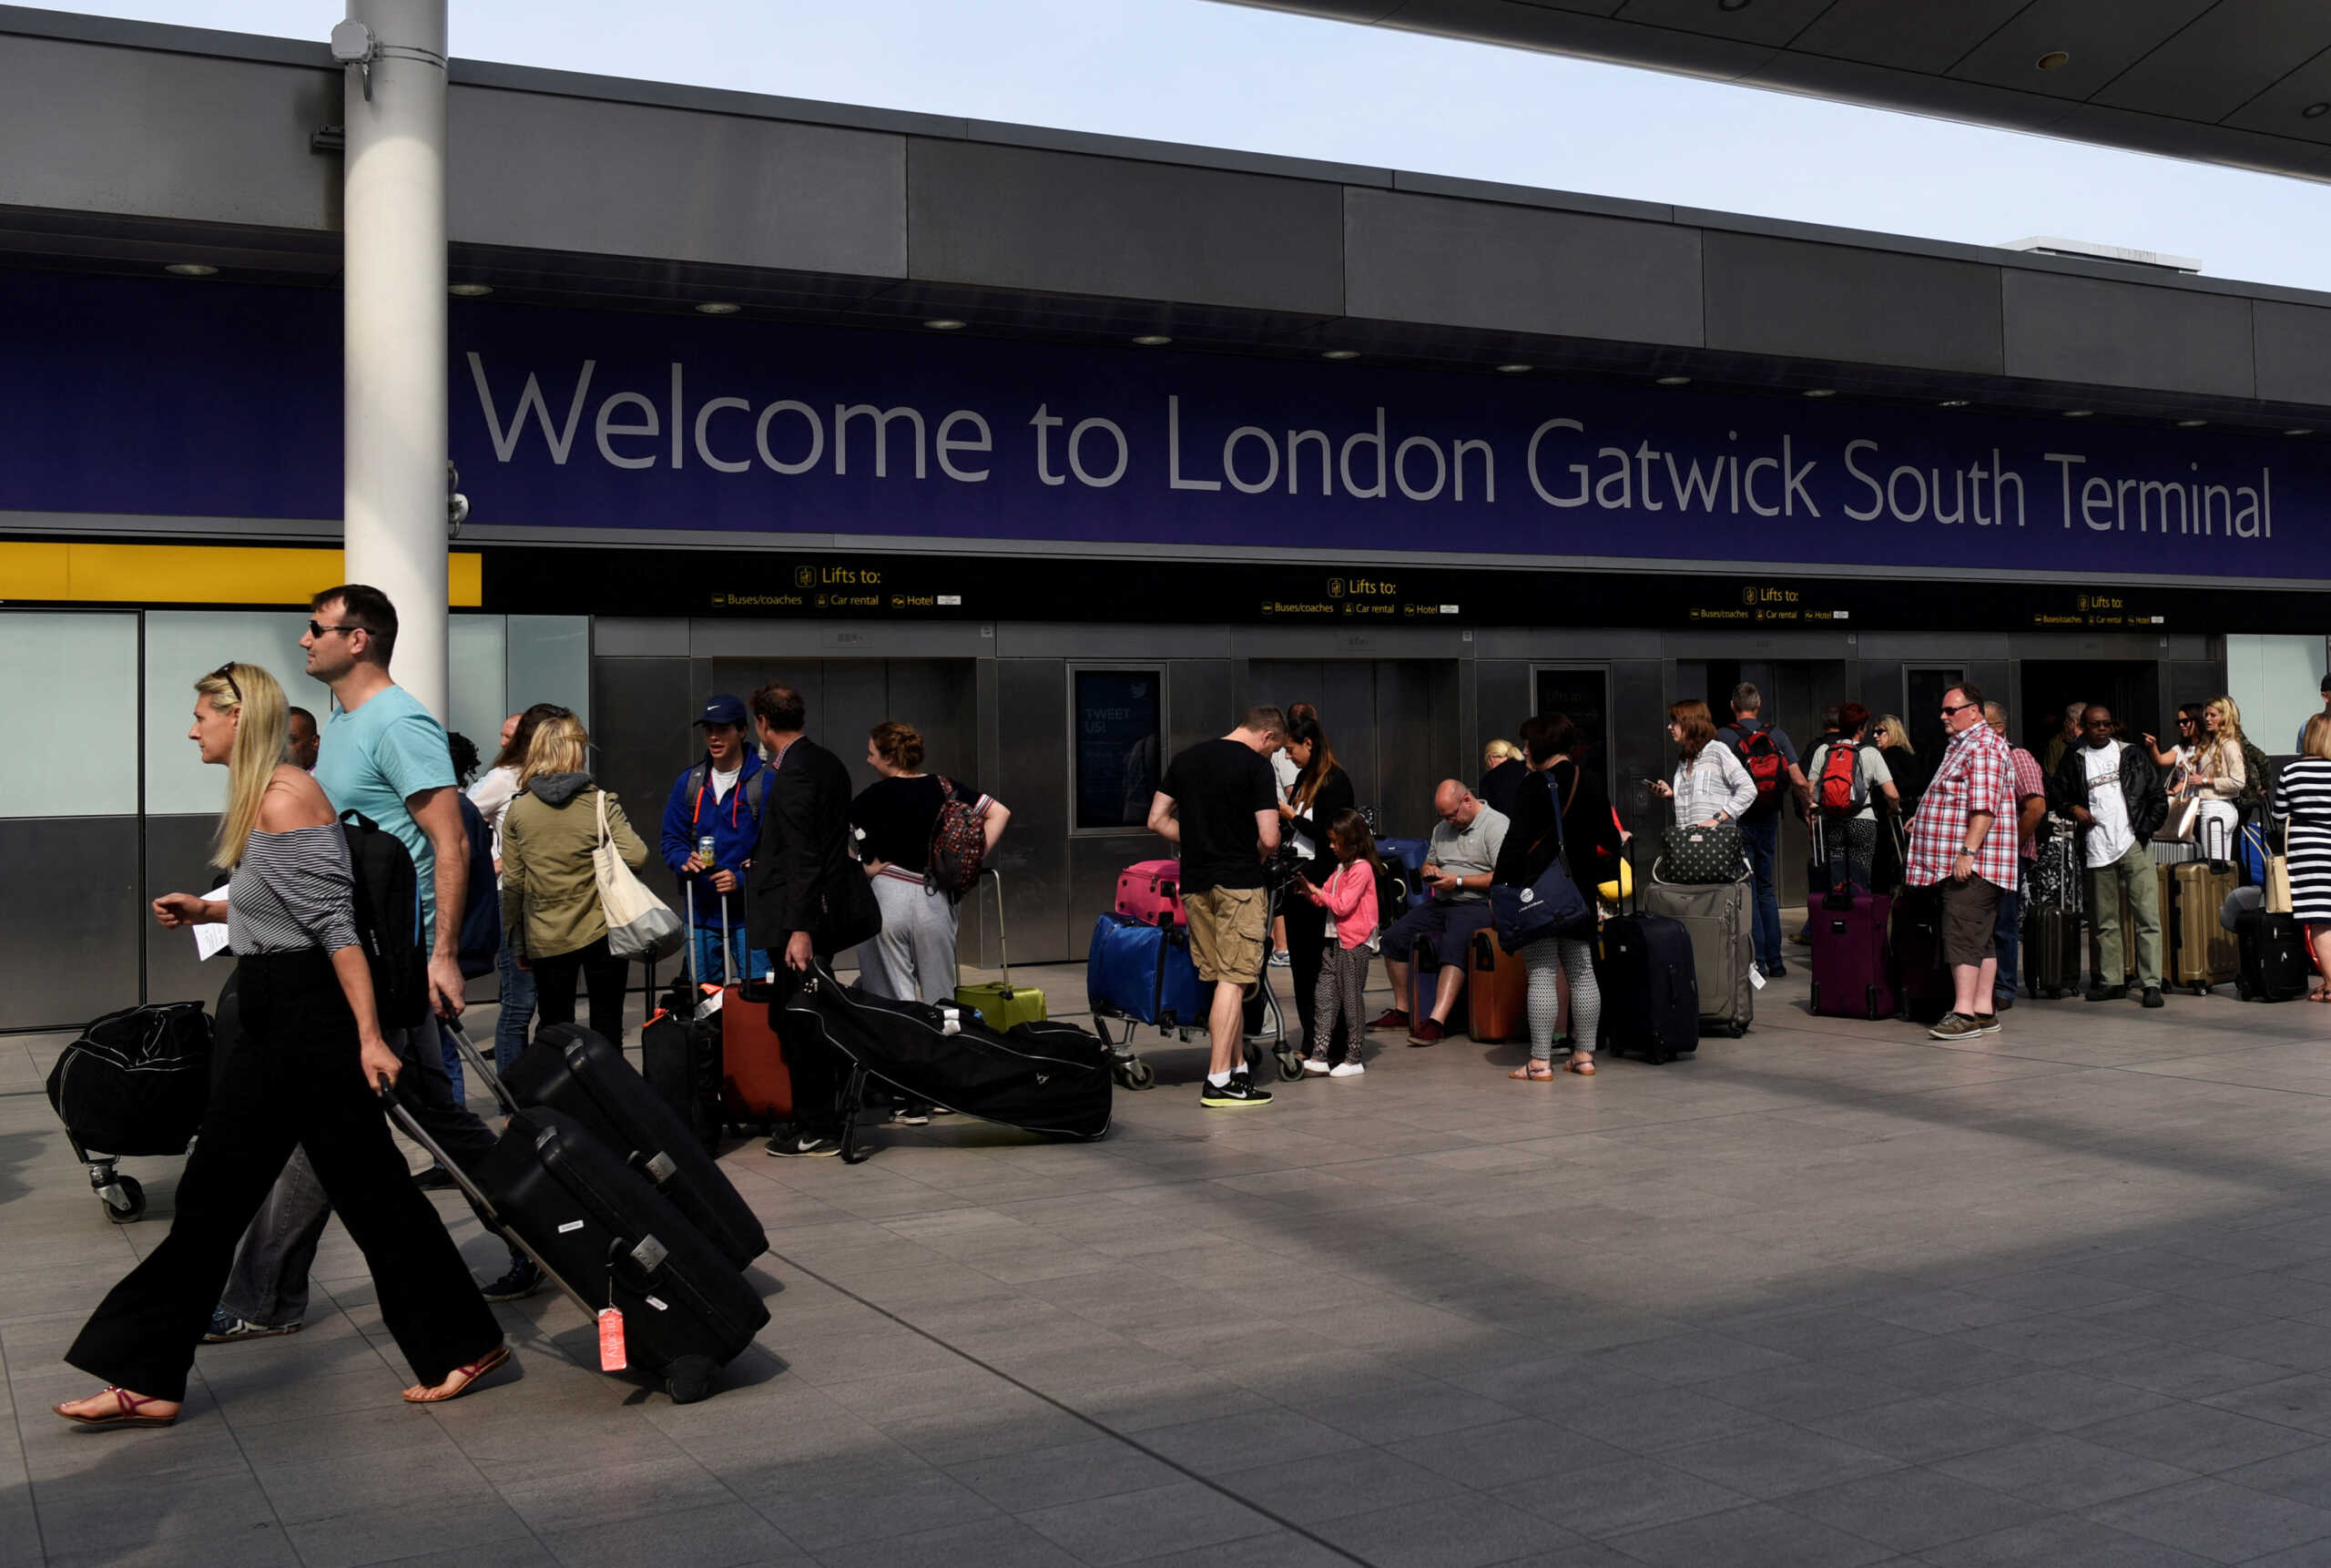 Βρετανία: Απεργίες ανακοίνωσαν οι εργαζόμενοι στο αεροδρόμιο Γκάτγουικ – Αναμένονται ακυρώσεις πτήσεων και καθυστερήσεις